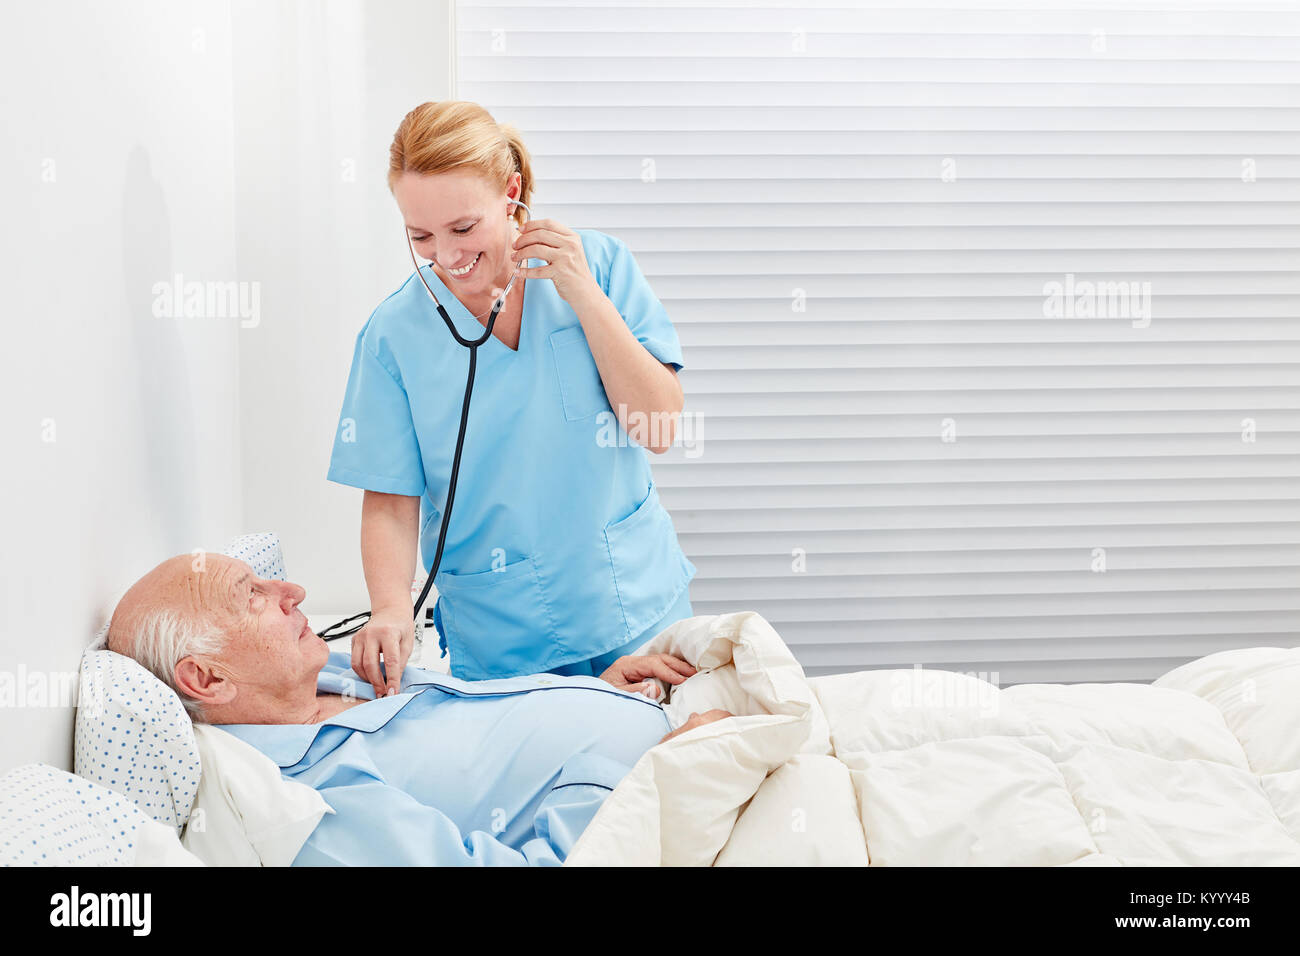 Un infermiere o un medico con stetoscopio esamina il paziente in ospedale Foto Stock